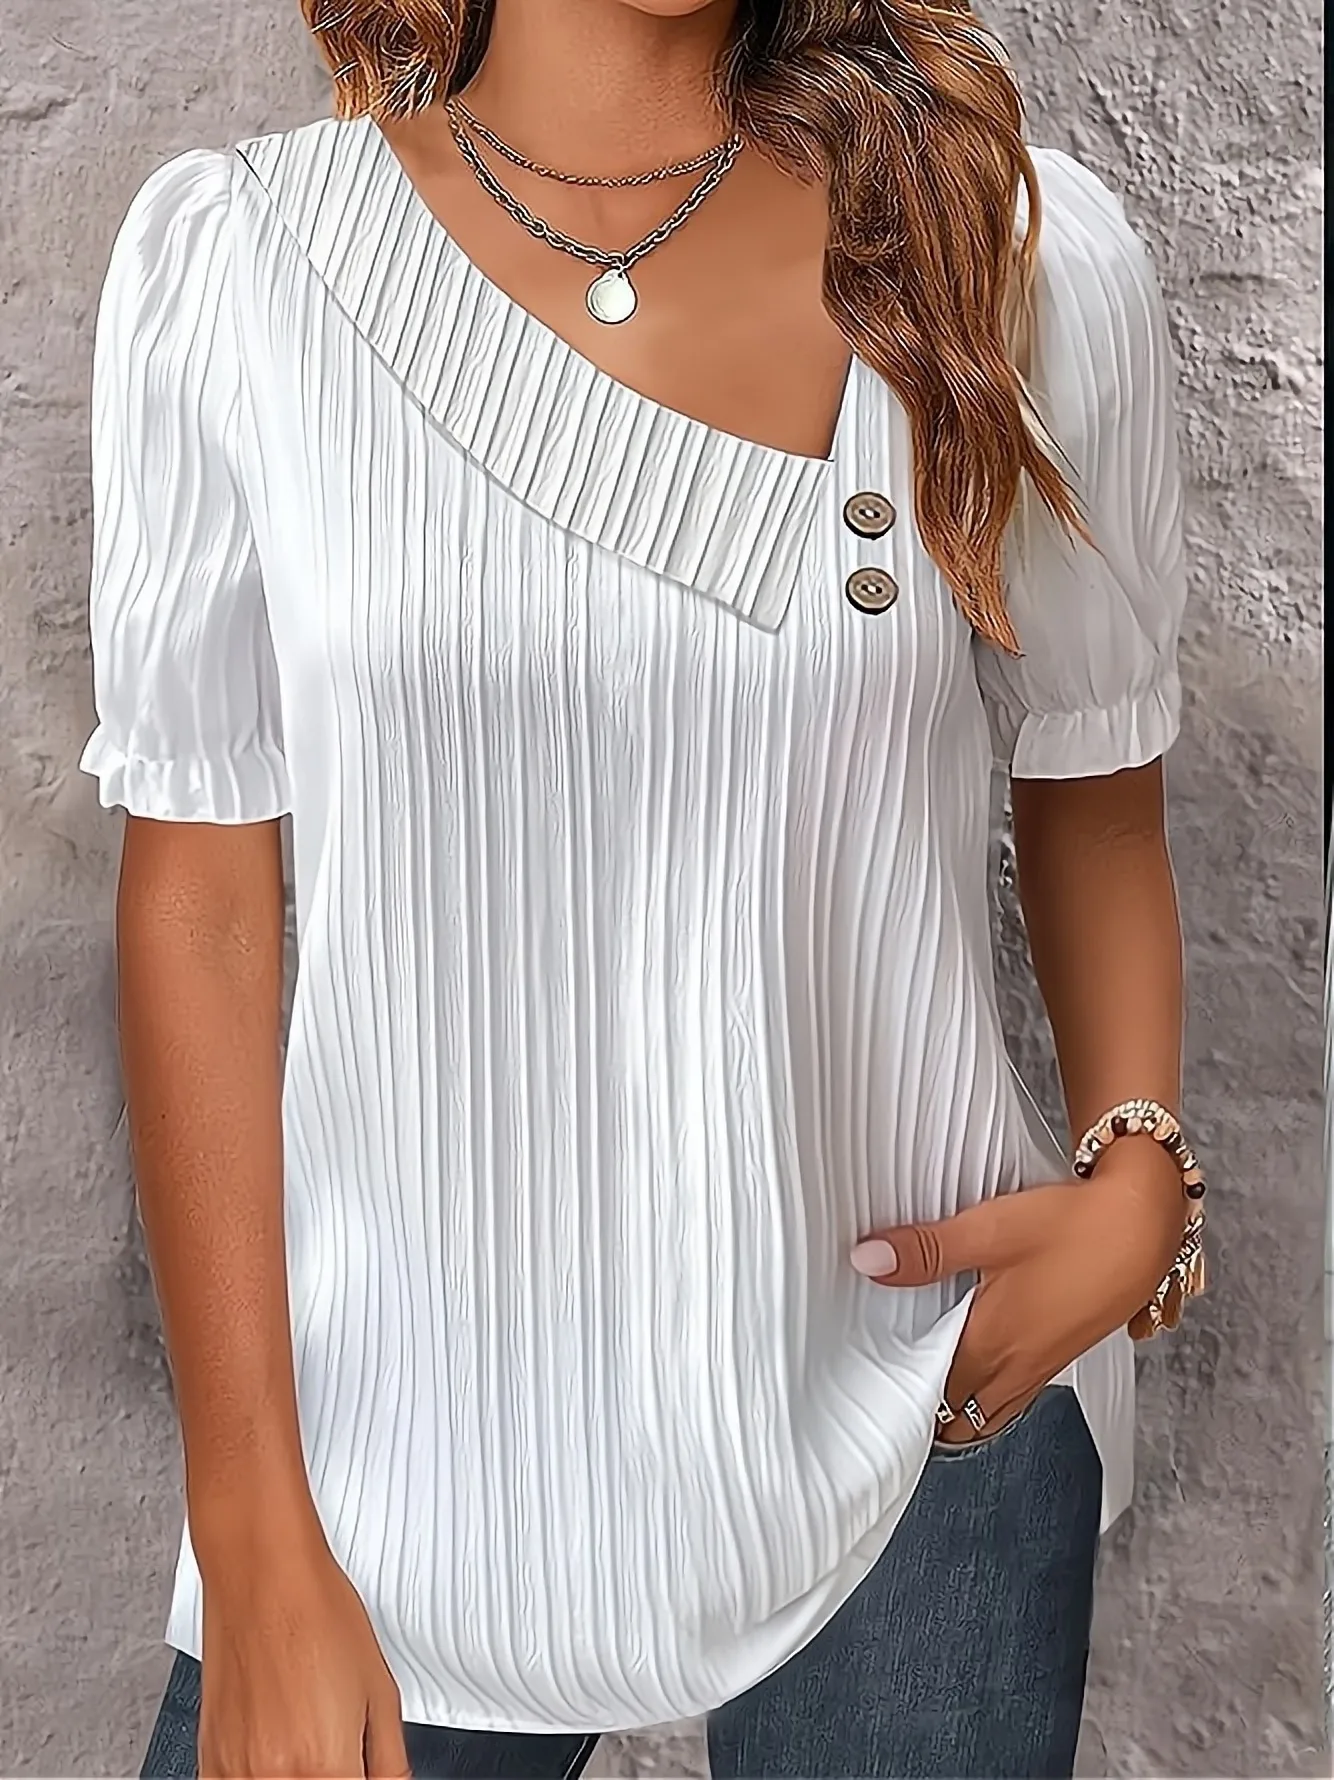 летняя минималистичная рубашка с V-образным вырезом на пуговицах Элегантная женская белая асимметричная модная блузка свободного кроя с короткими рукавами